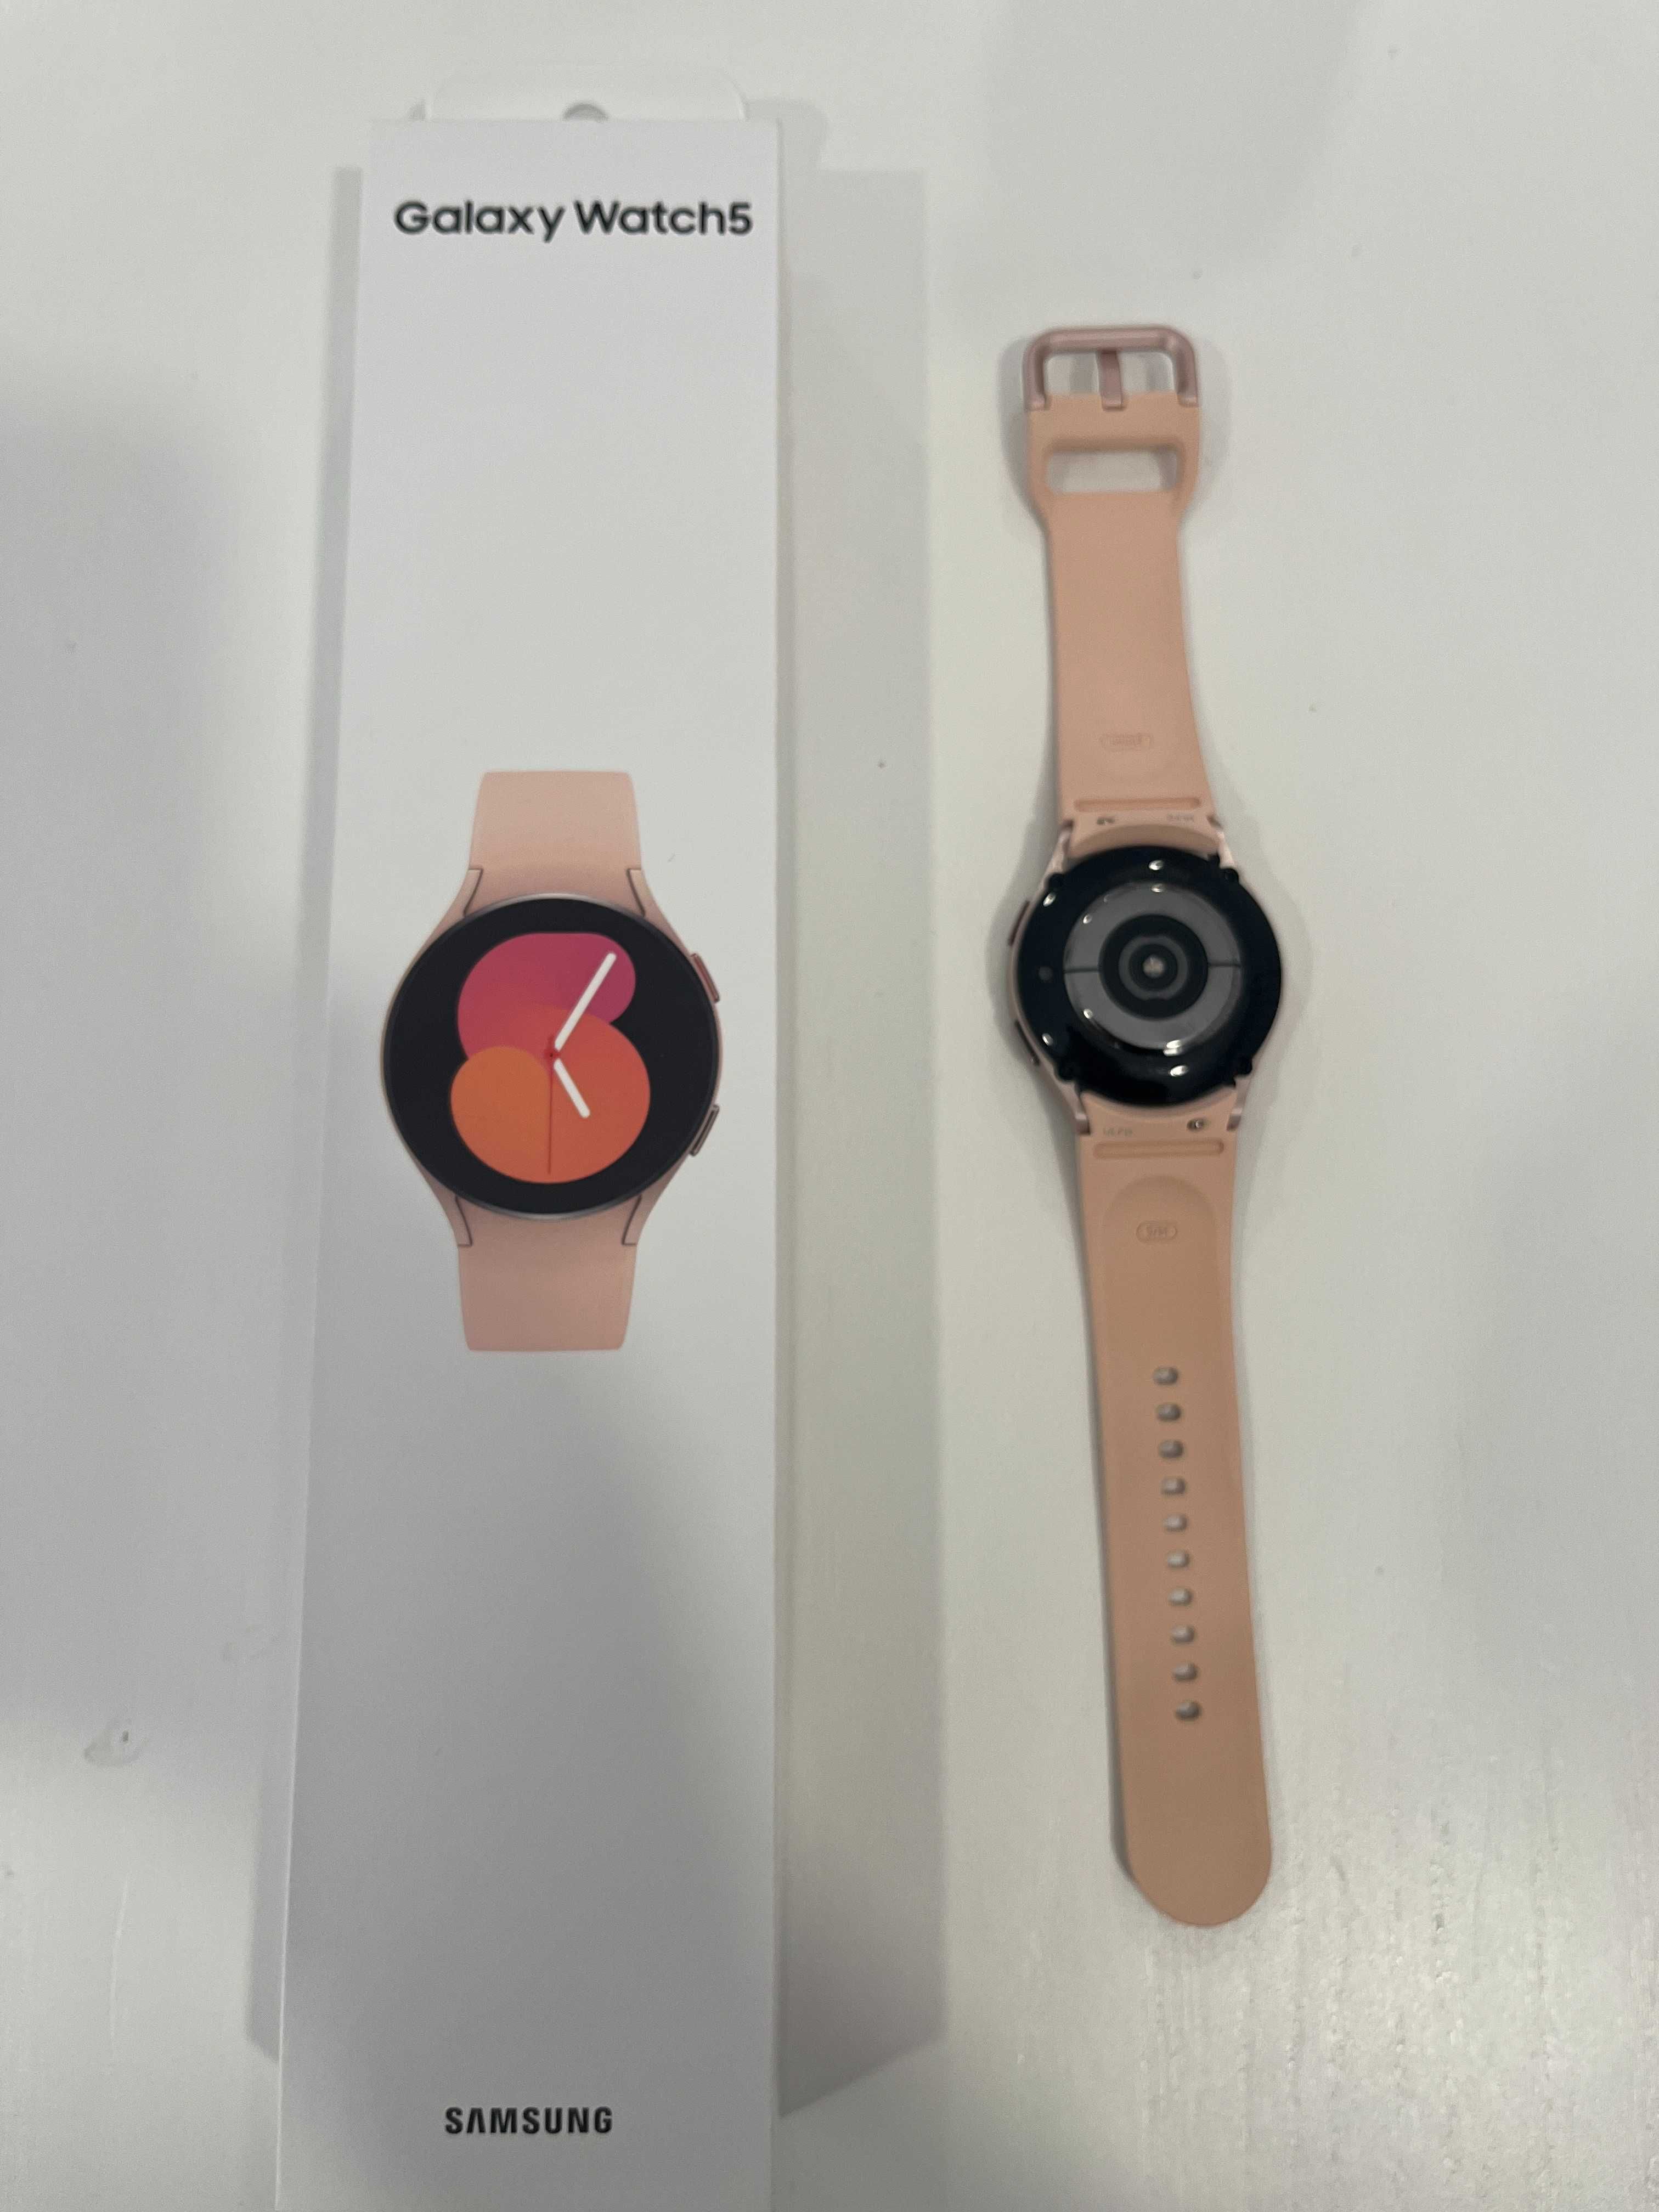 SAMSUNG Smartwatch - Galaxy Watch 5 BT 40mm [PINK GOLD] com garantia